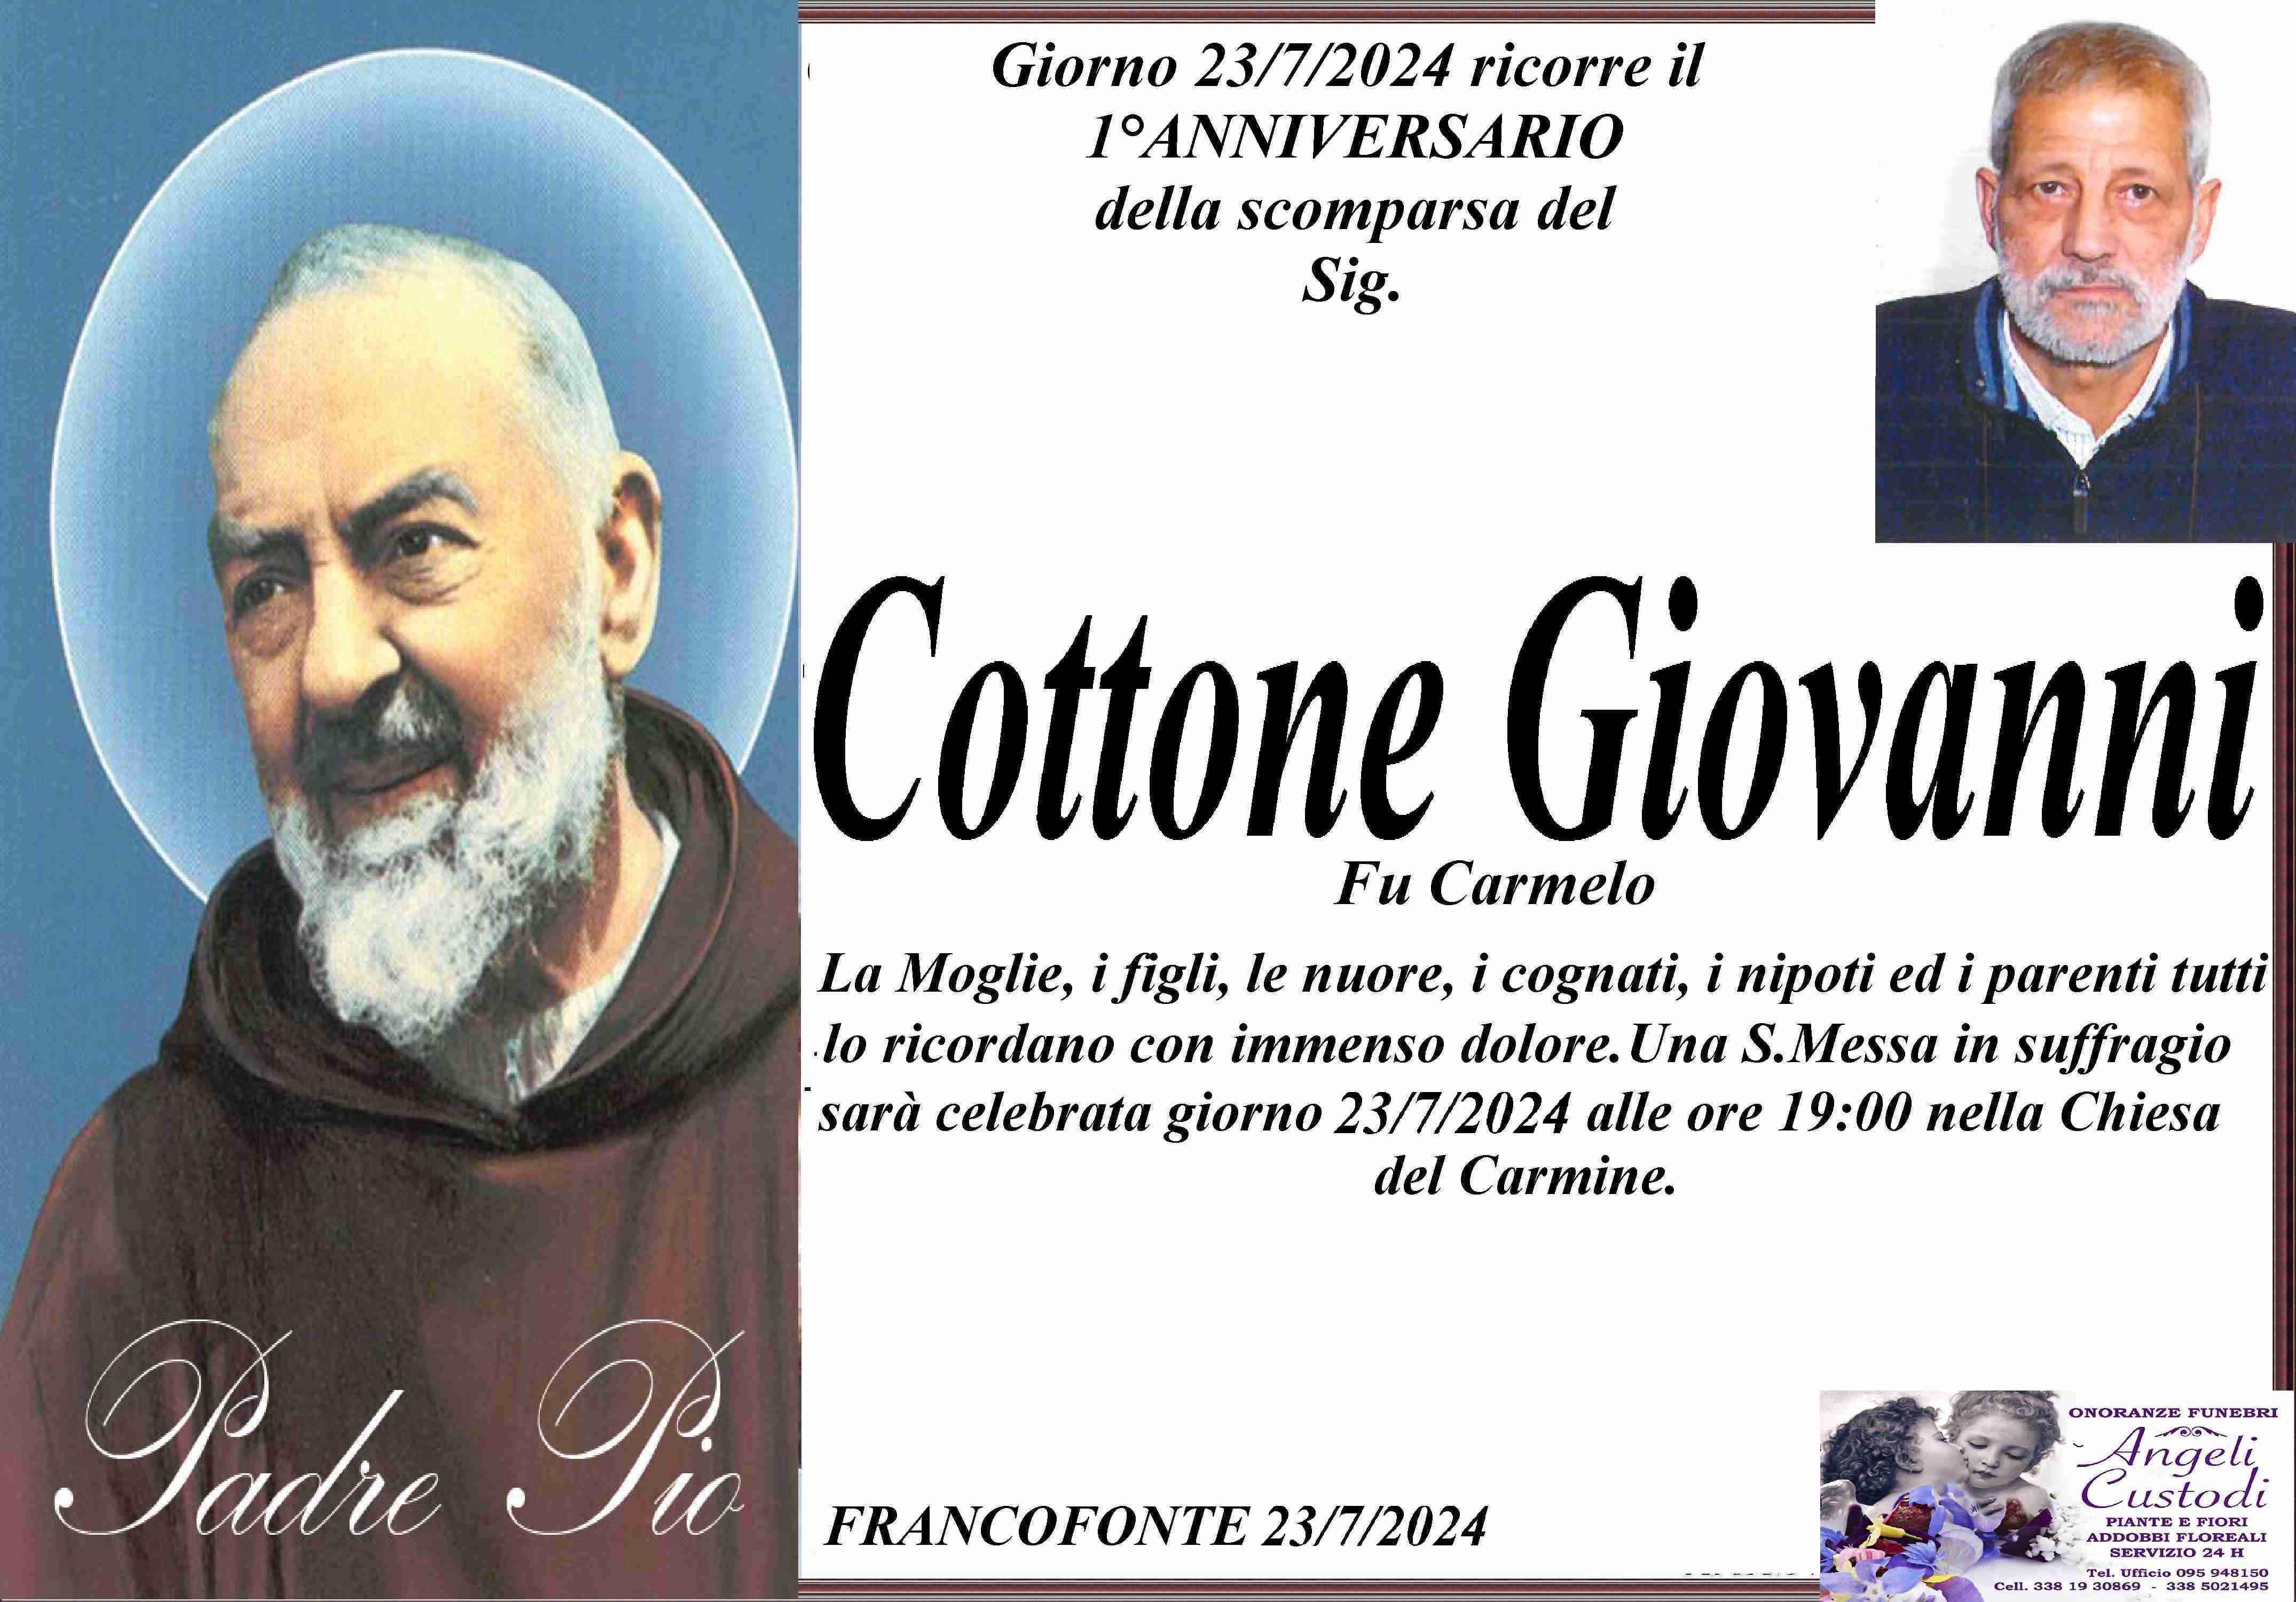 Cottone Giovanni